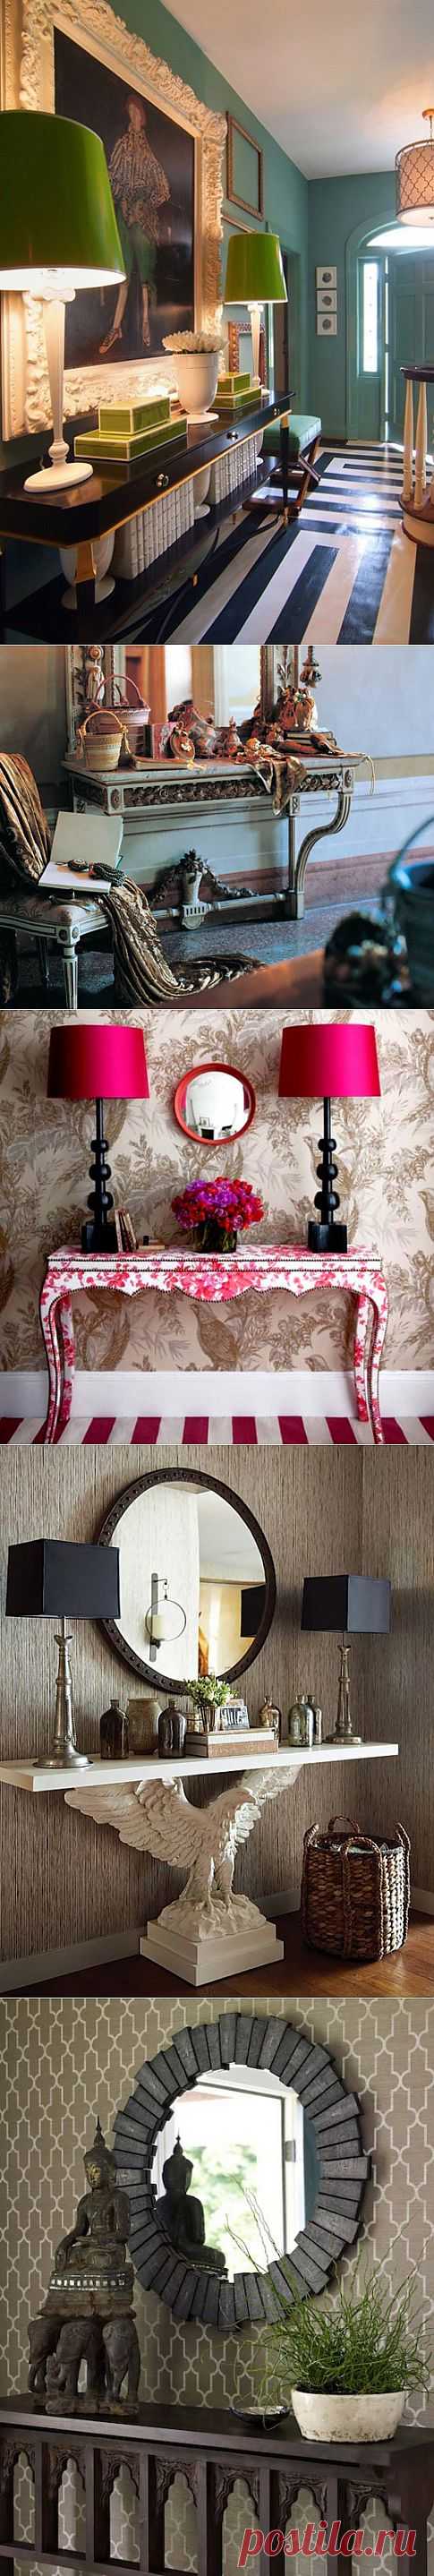 Консольный столик в интерьере | Интерьер и Дизайн